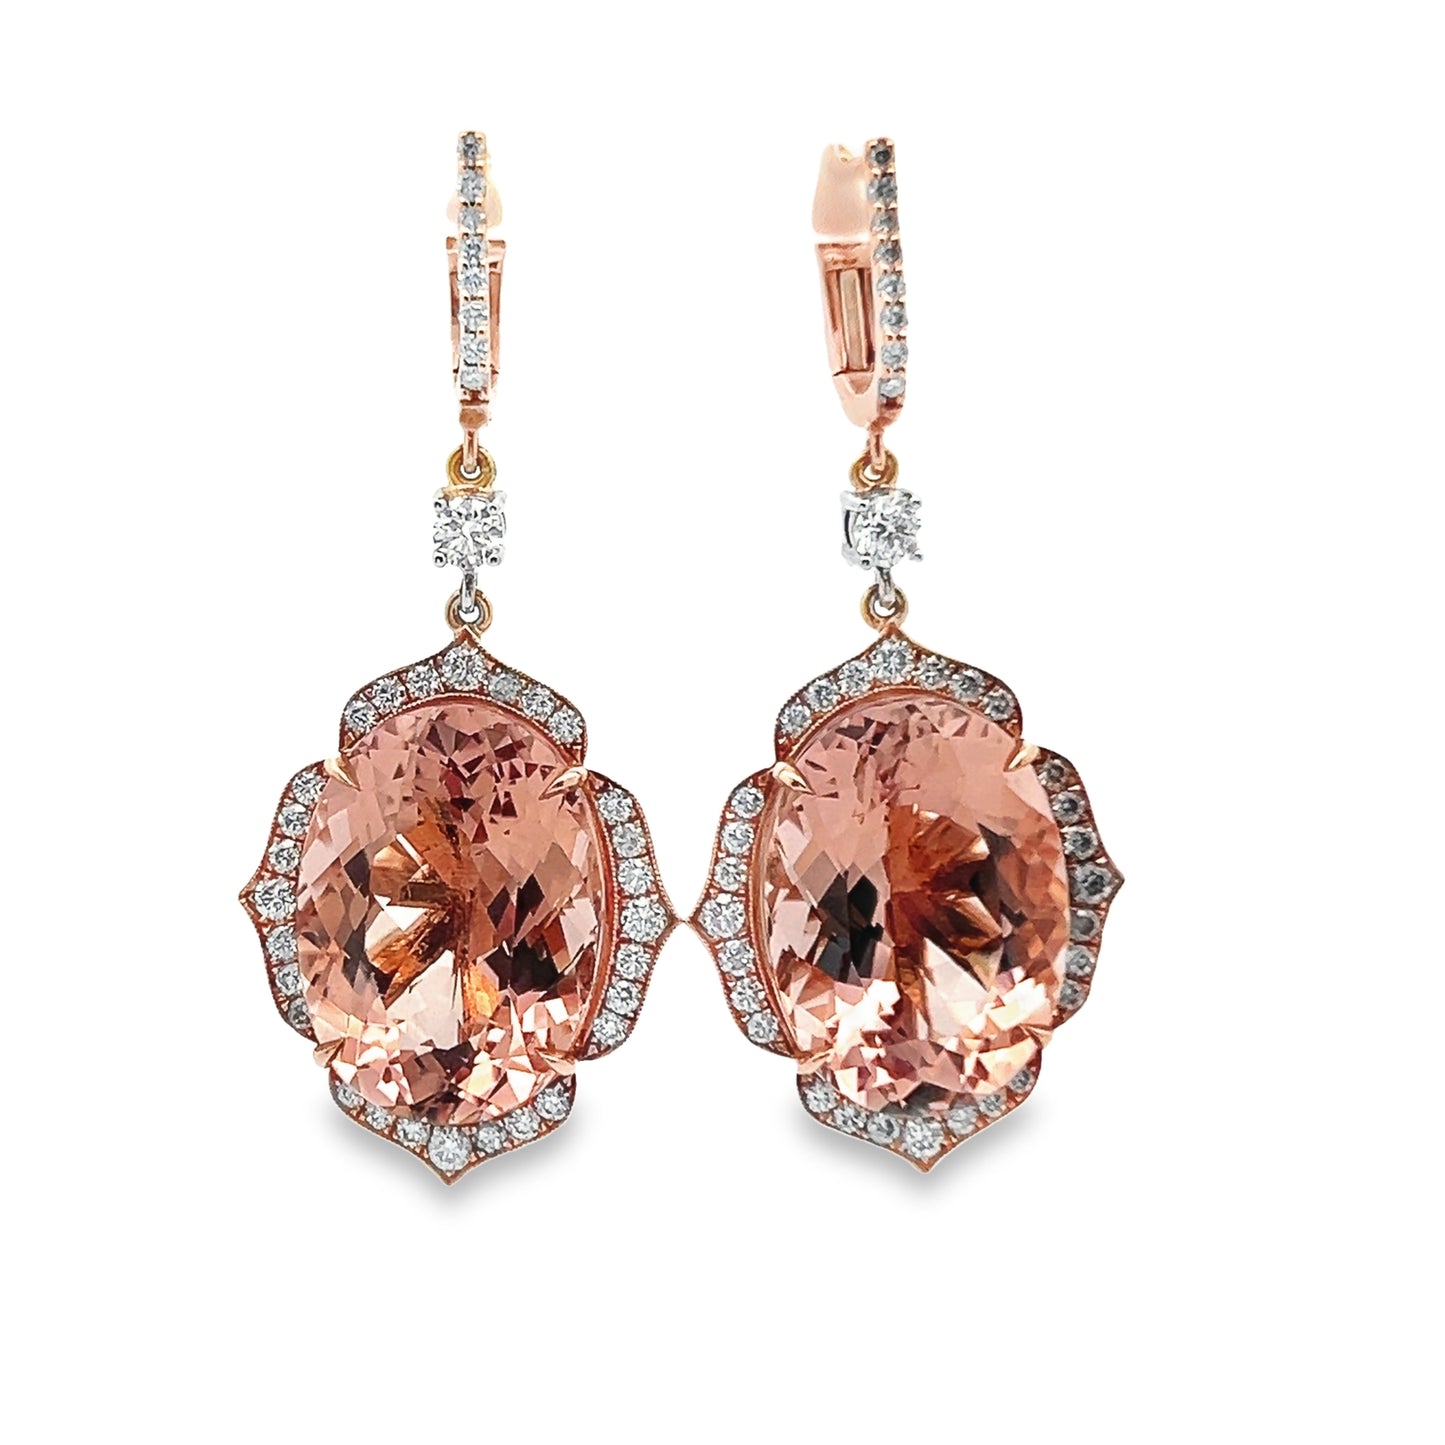 Morganite and Diamond Dangle Earrings in 14K Rose Gold